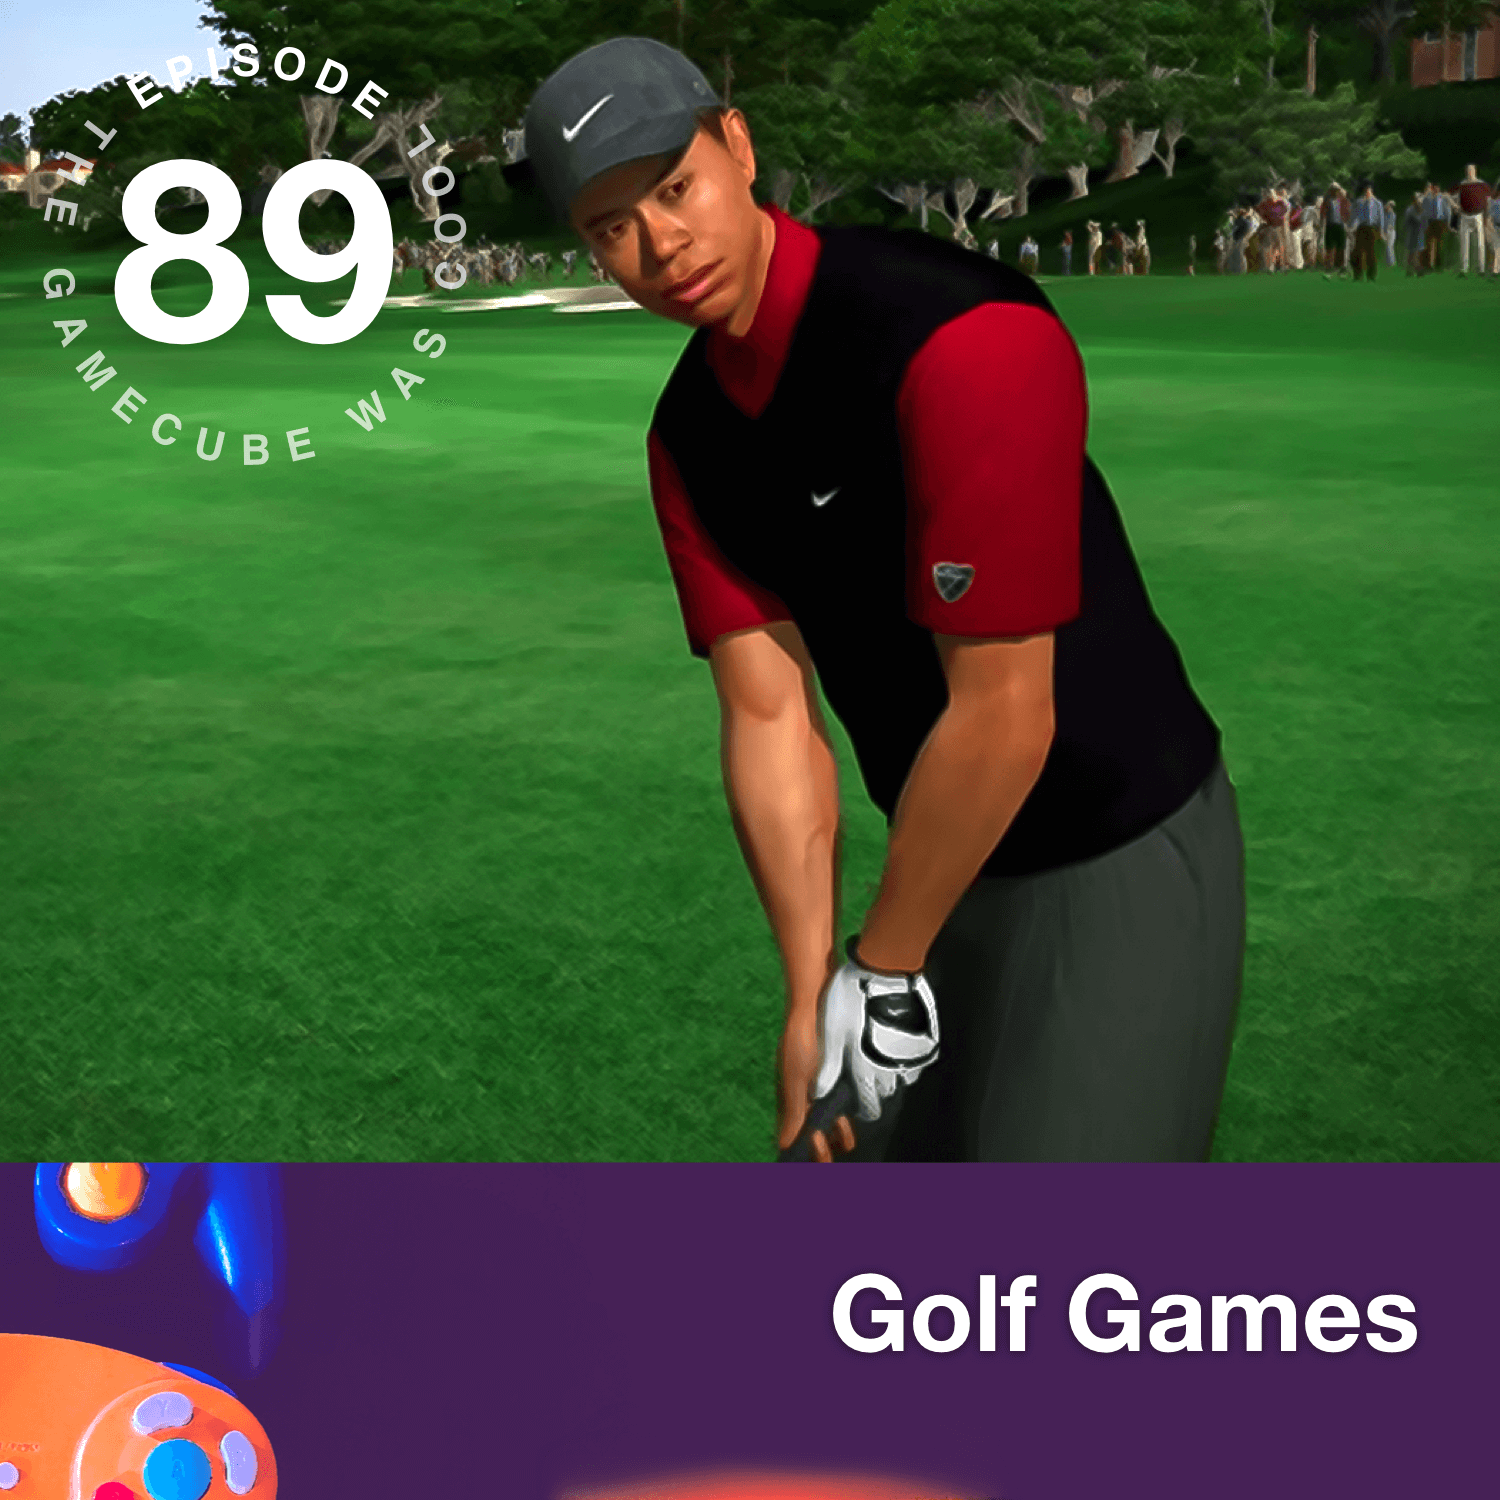 Tiger Woods PGA Tour & Golf Games